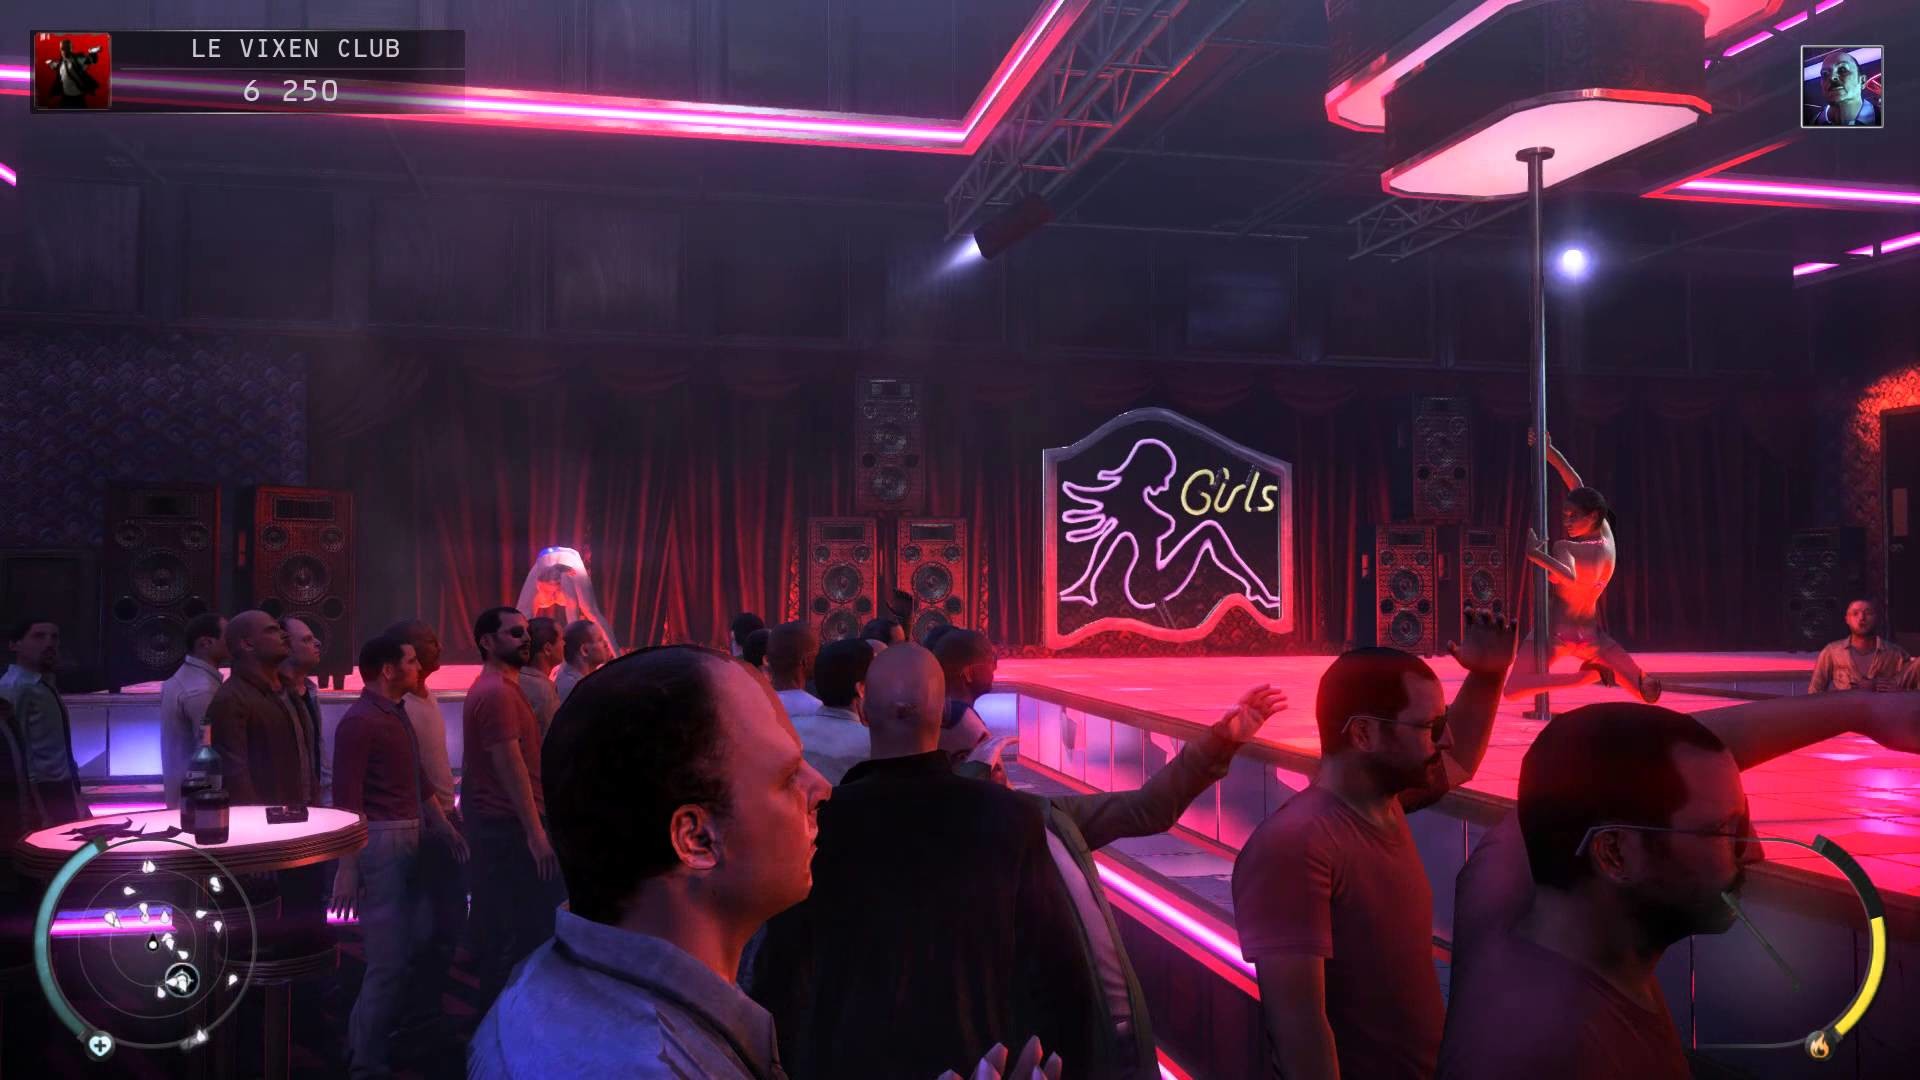 Hitman Absolution – Nightclub scene